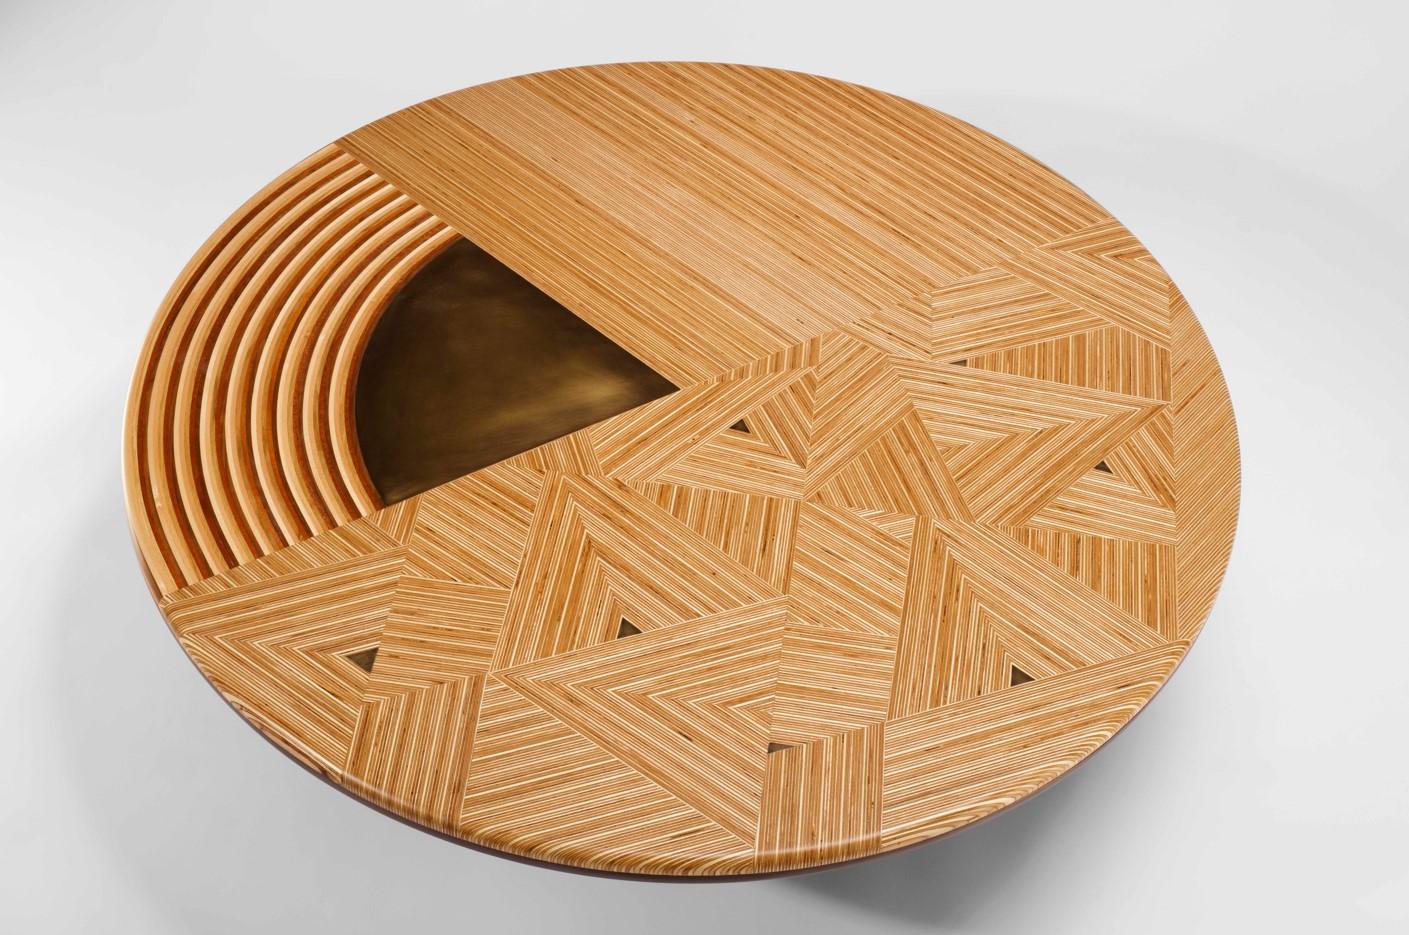 La table basse fabriquée par Georges Mohasseb est le fruit d'une fusion harmonieuse entre l'artisanat traditionnel, un design innovant et une attention méticuleuse portée à la matérialité, ce qui la rend unique et spéciale.

Au cœur de la qualité